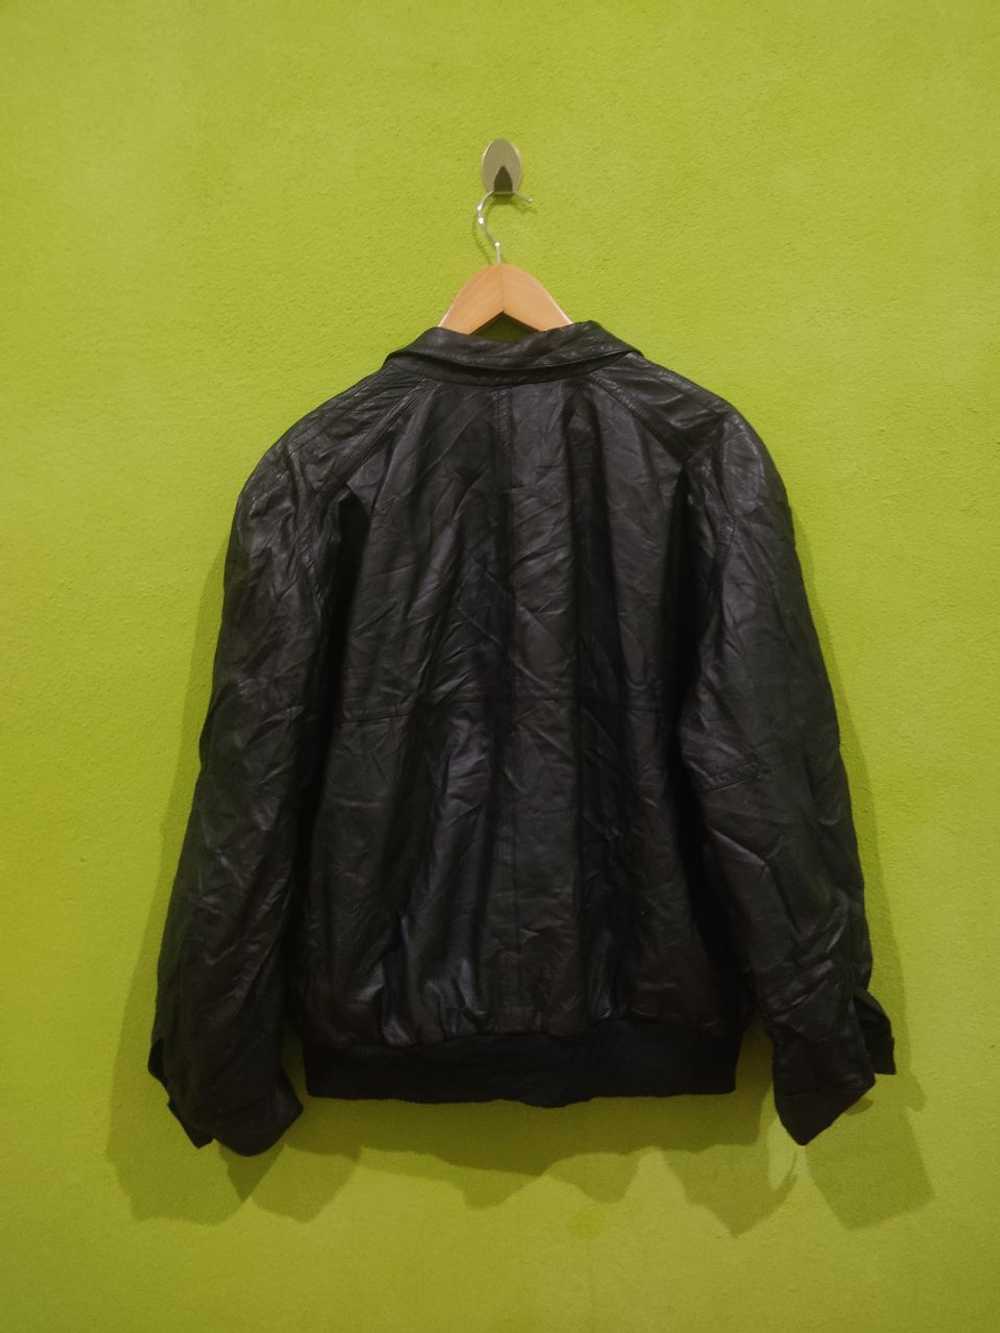 Valentino Garavani Pelle Genuine Leather Black Ja… - image 2